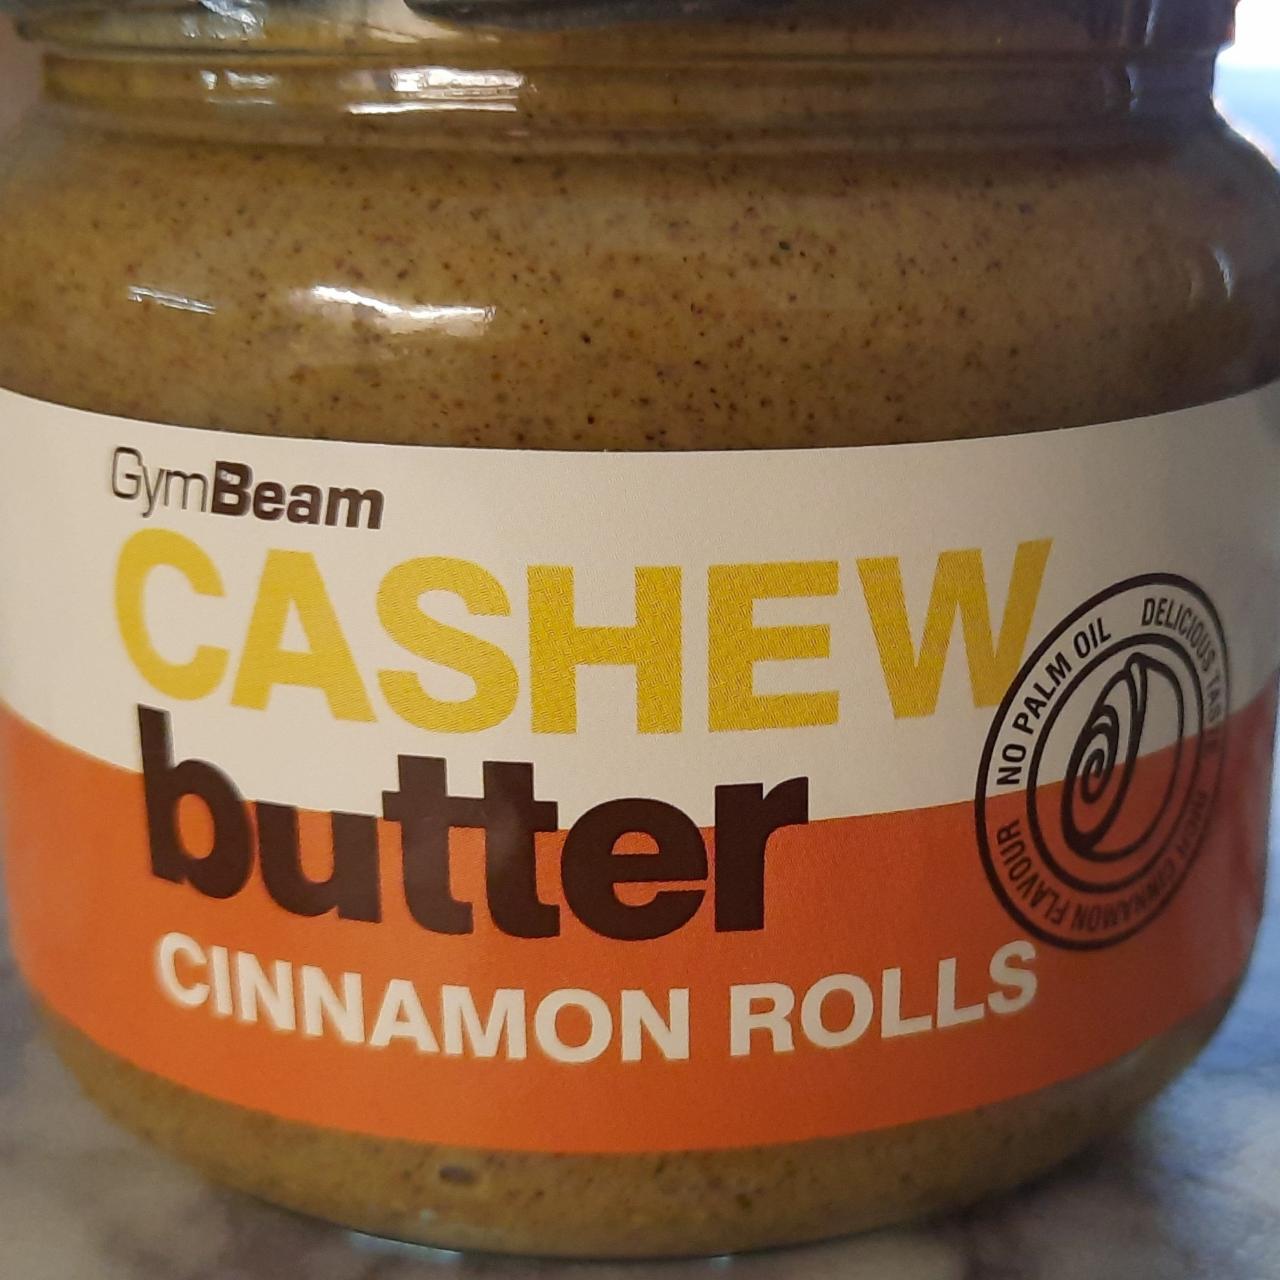 Fotografie - Cashew butter Cinnamon rolls GymBeam